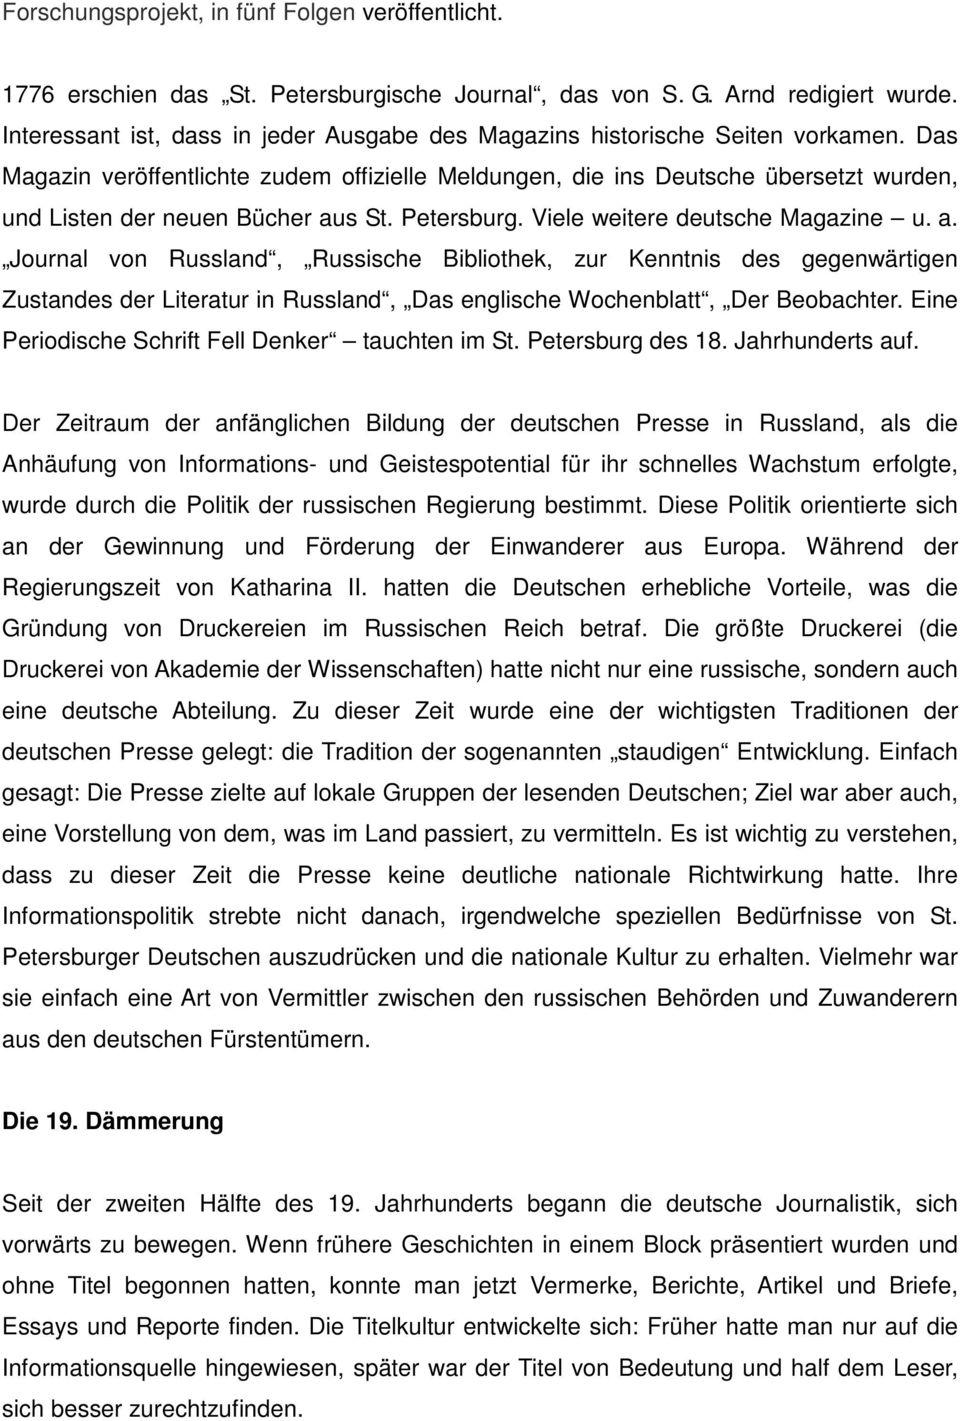 Das Magazin veröffentlichte zudem offizielle Meldungen, die ins Deutsche übersetzt wurden, und Listen der neuen Bücher au